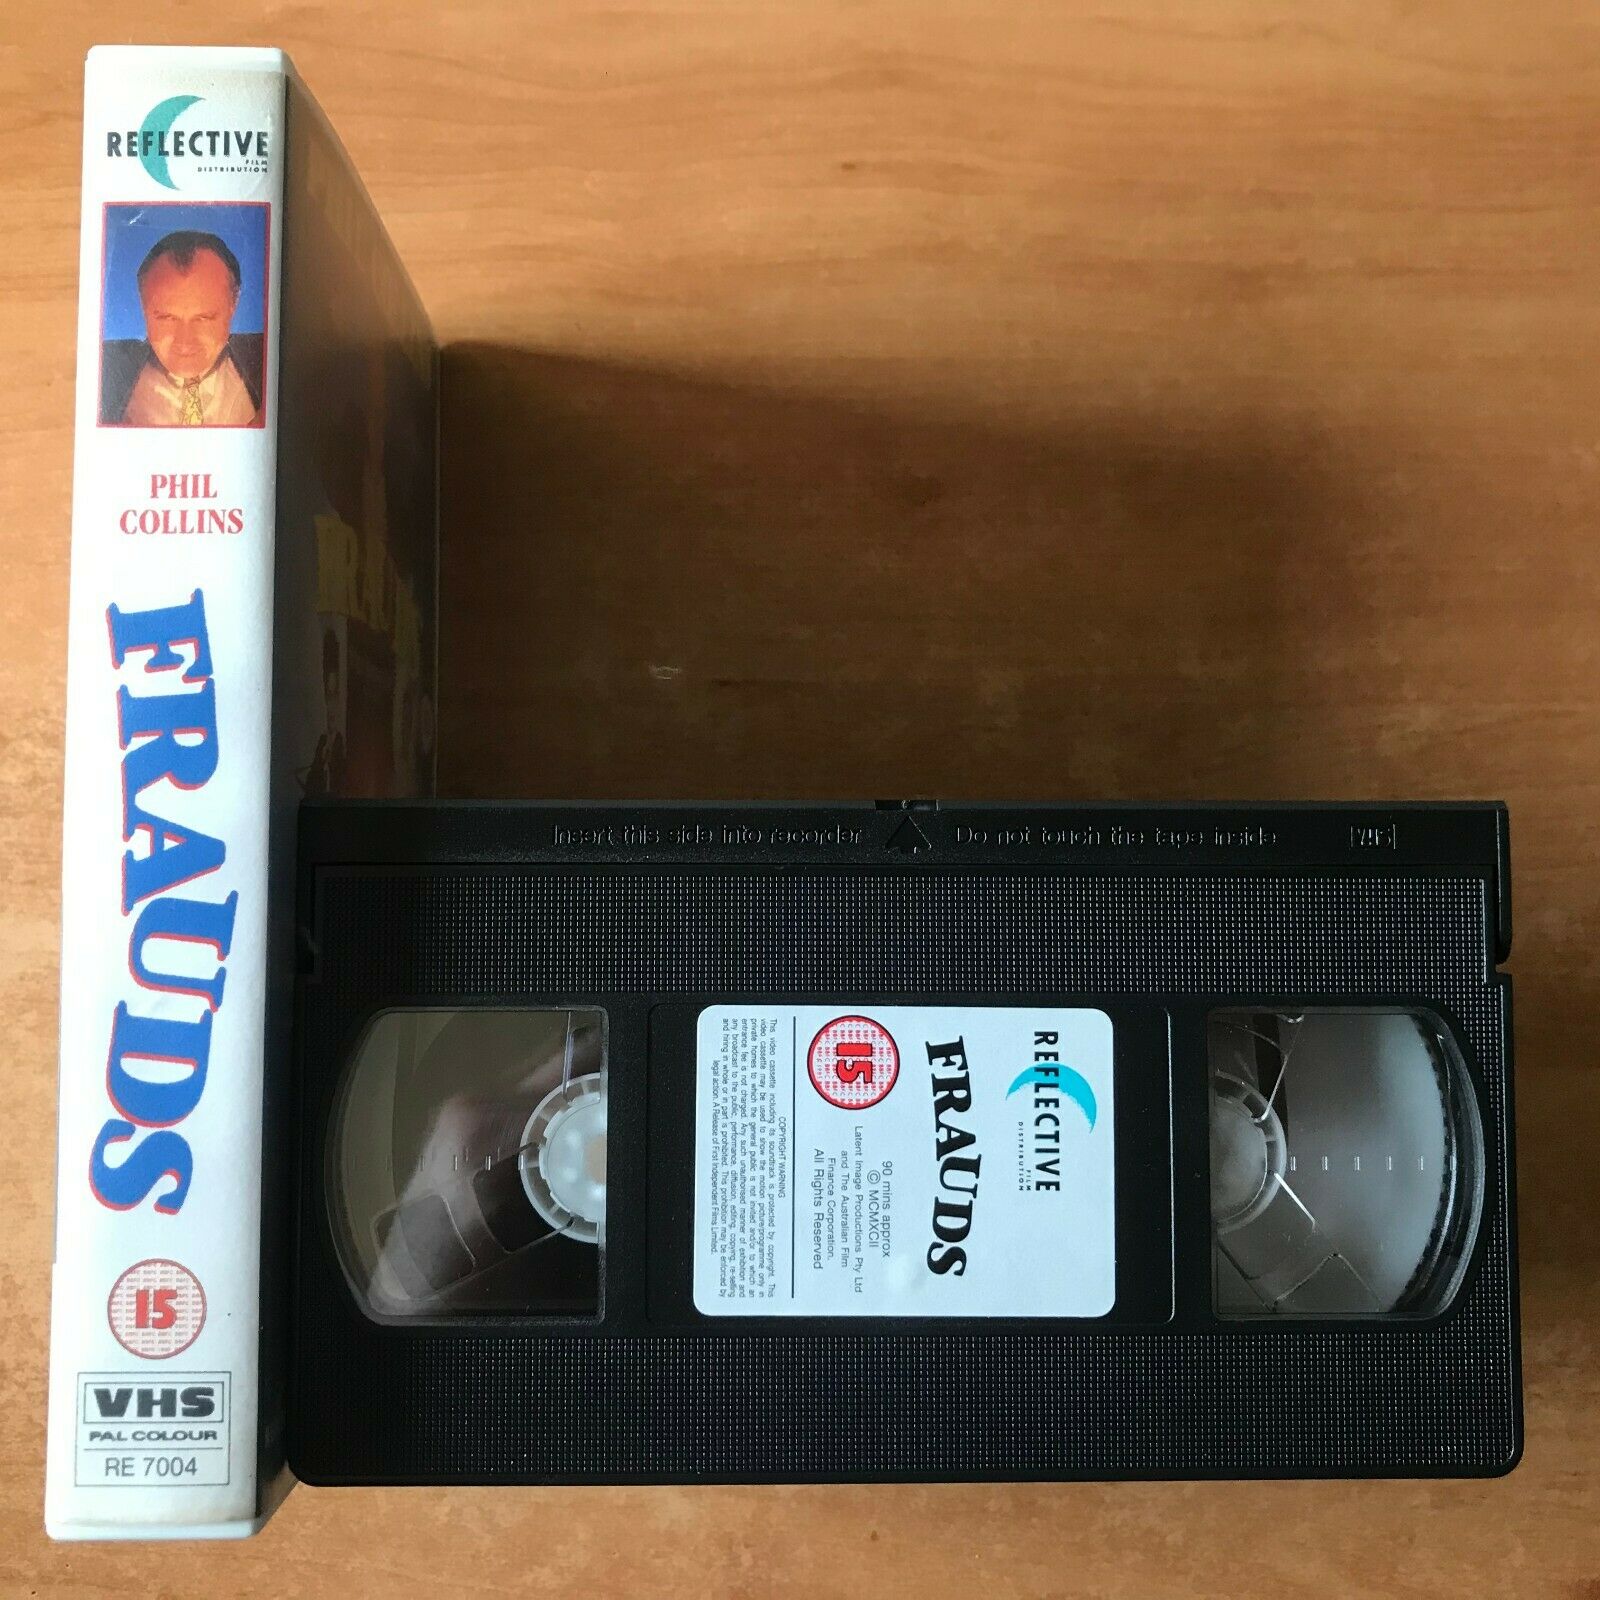 Frauds (1993) Crime Thriller [Big Box] Rental; Phil Collins / Hugo Weaving - OOP VHS-